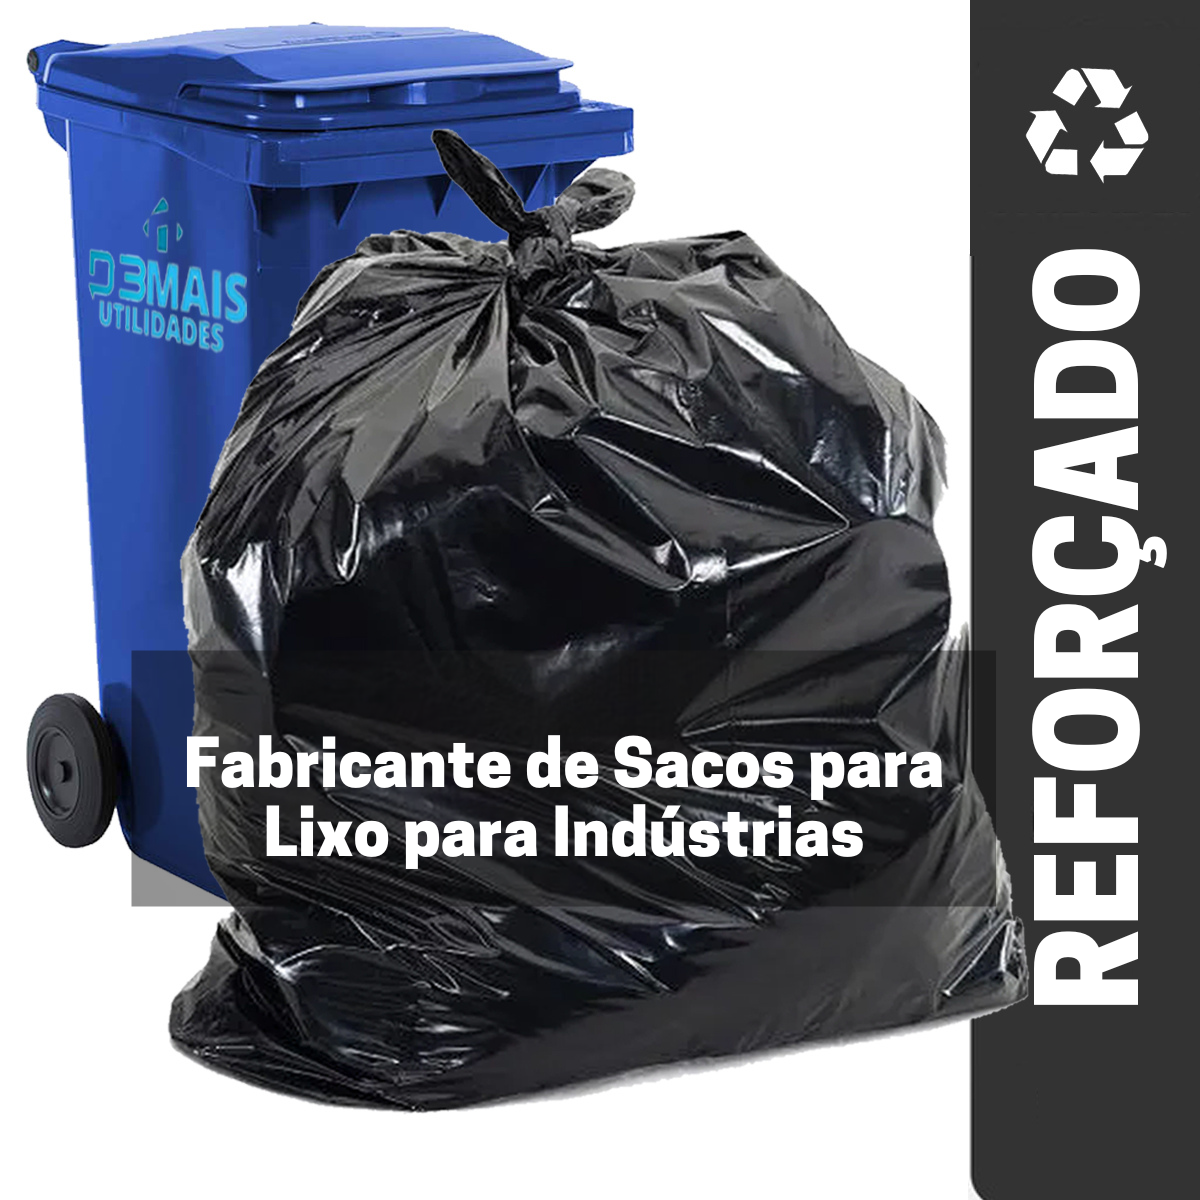 Fabricante de Sacos para Lixo para Indústrias - D3mais utilidades |  Distribuidora de Produtos de Limpeza e utilidades